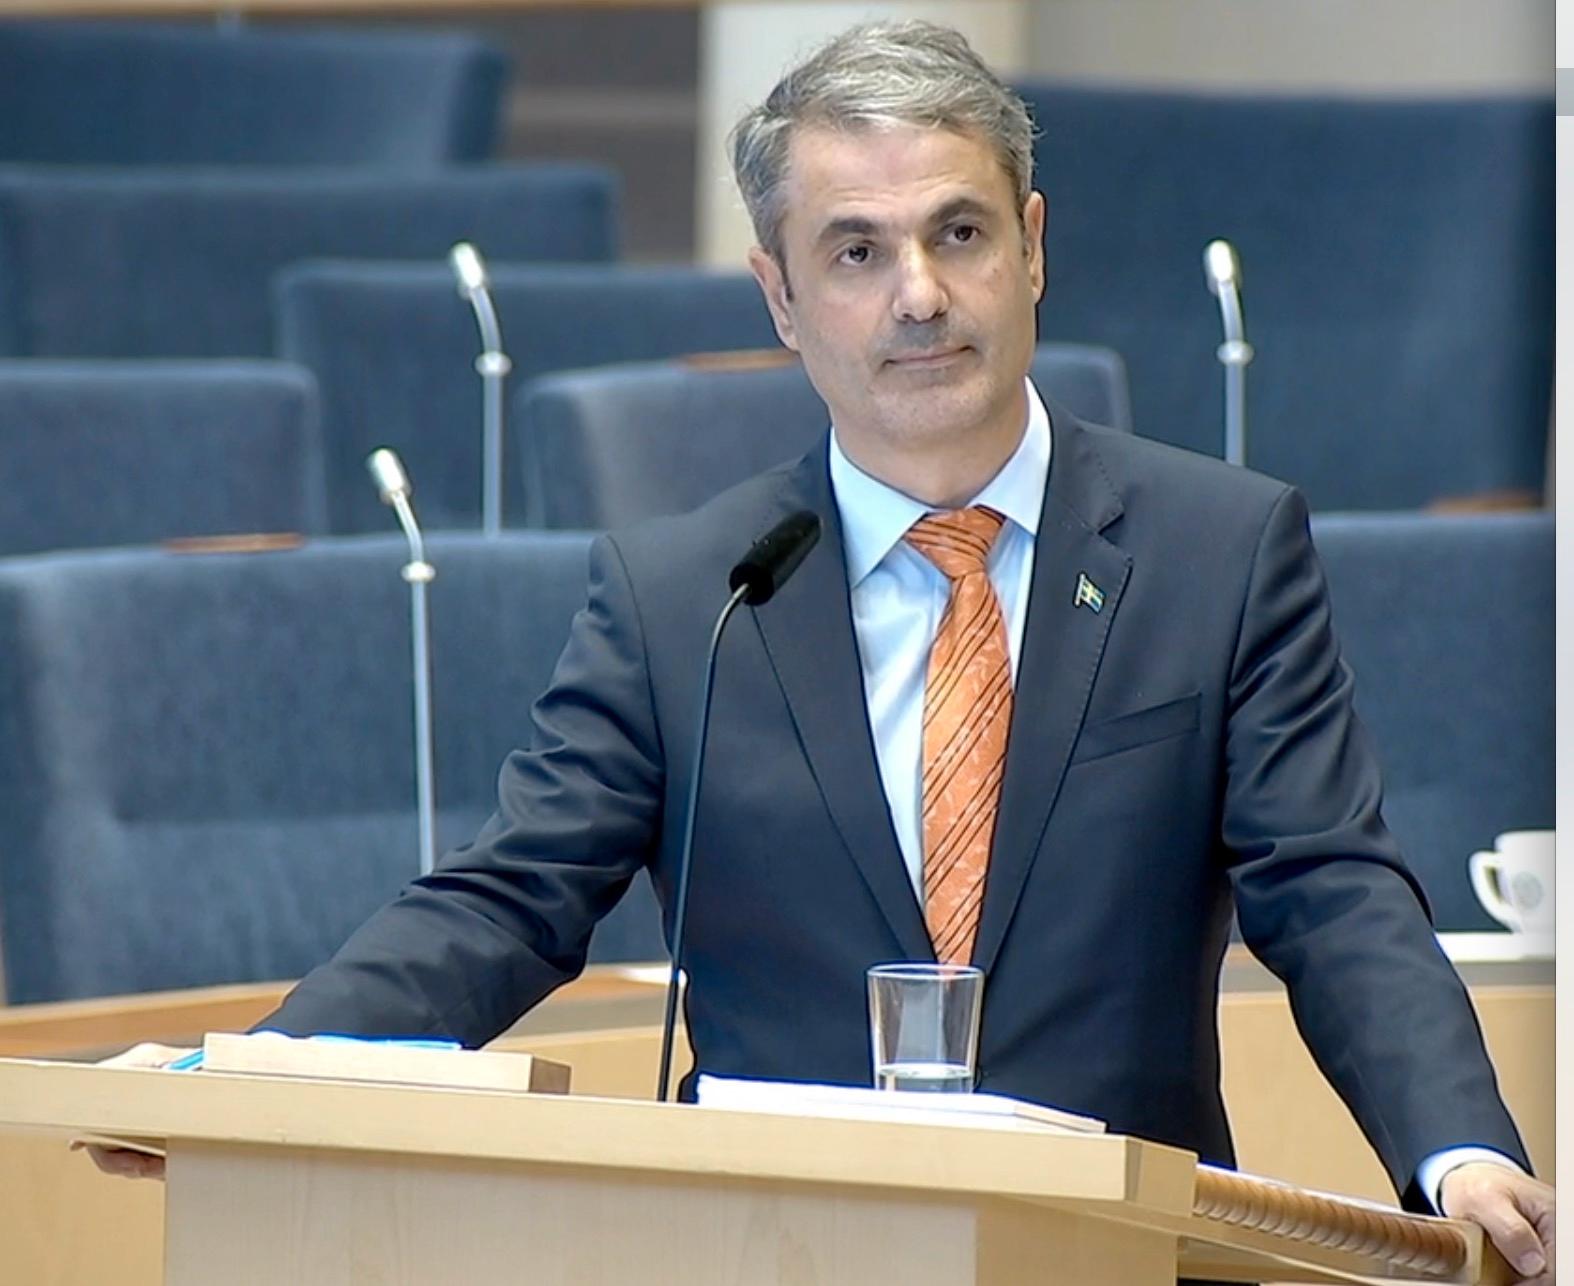 Näringsminister Ibrahim Baylan pressades i riksdagen om Aftonbladets avslöjande Nätjättarna